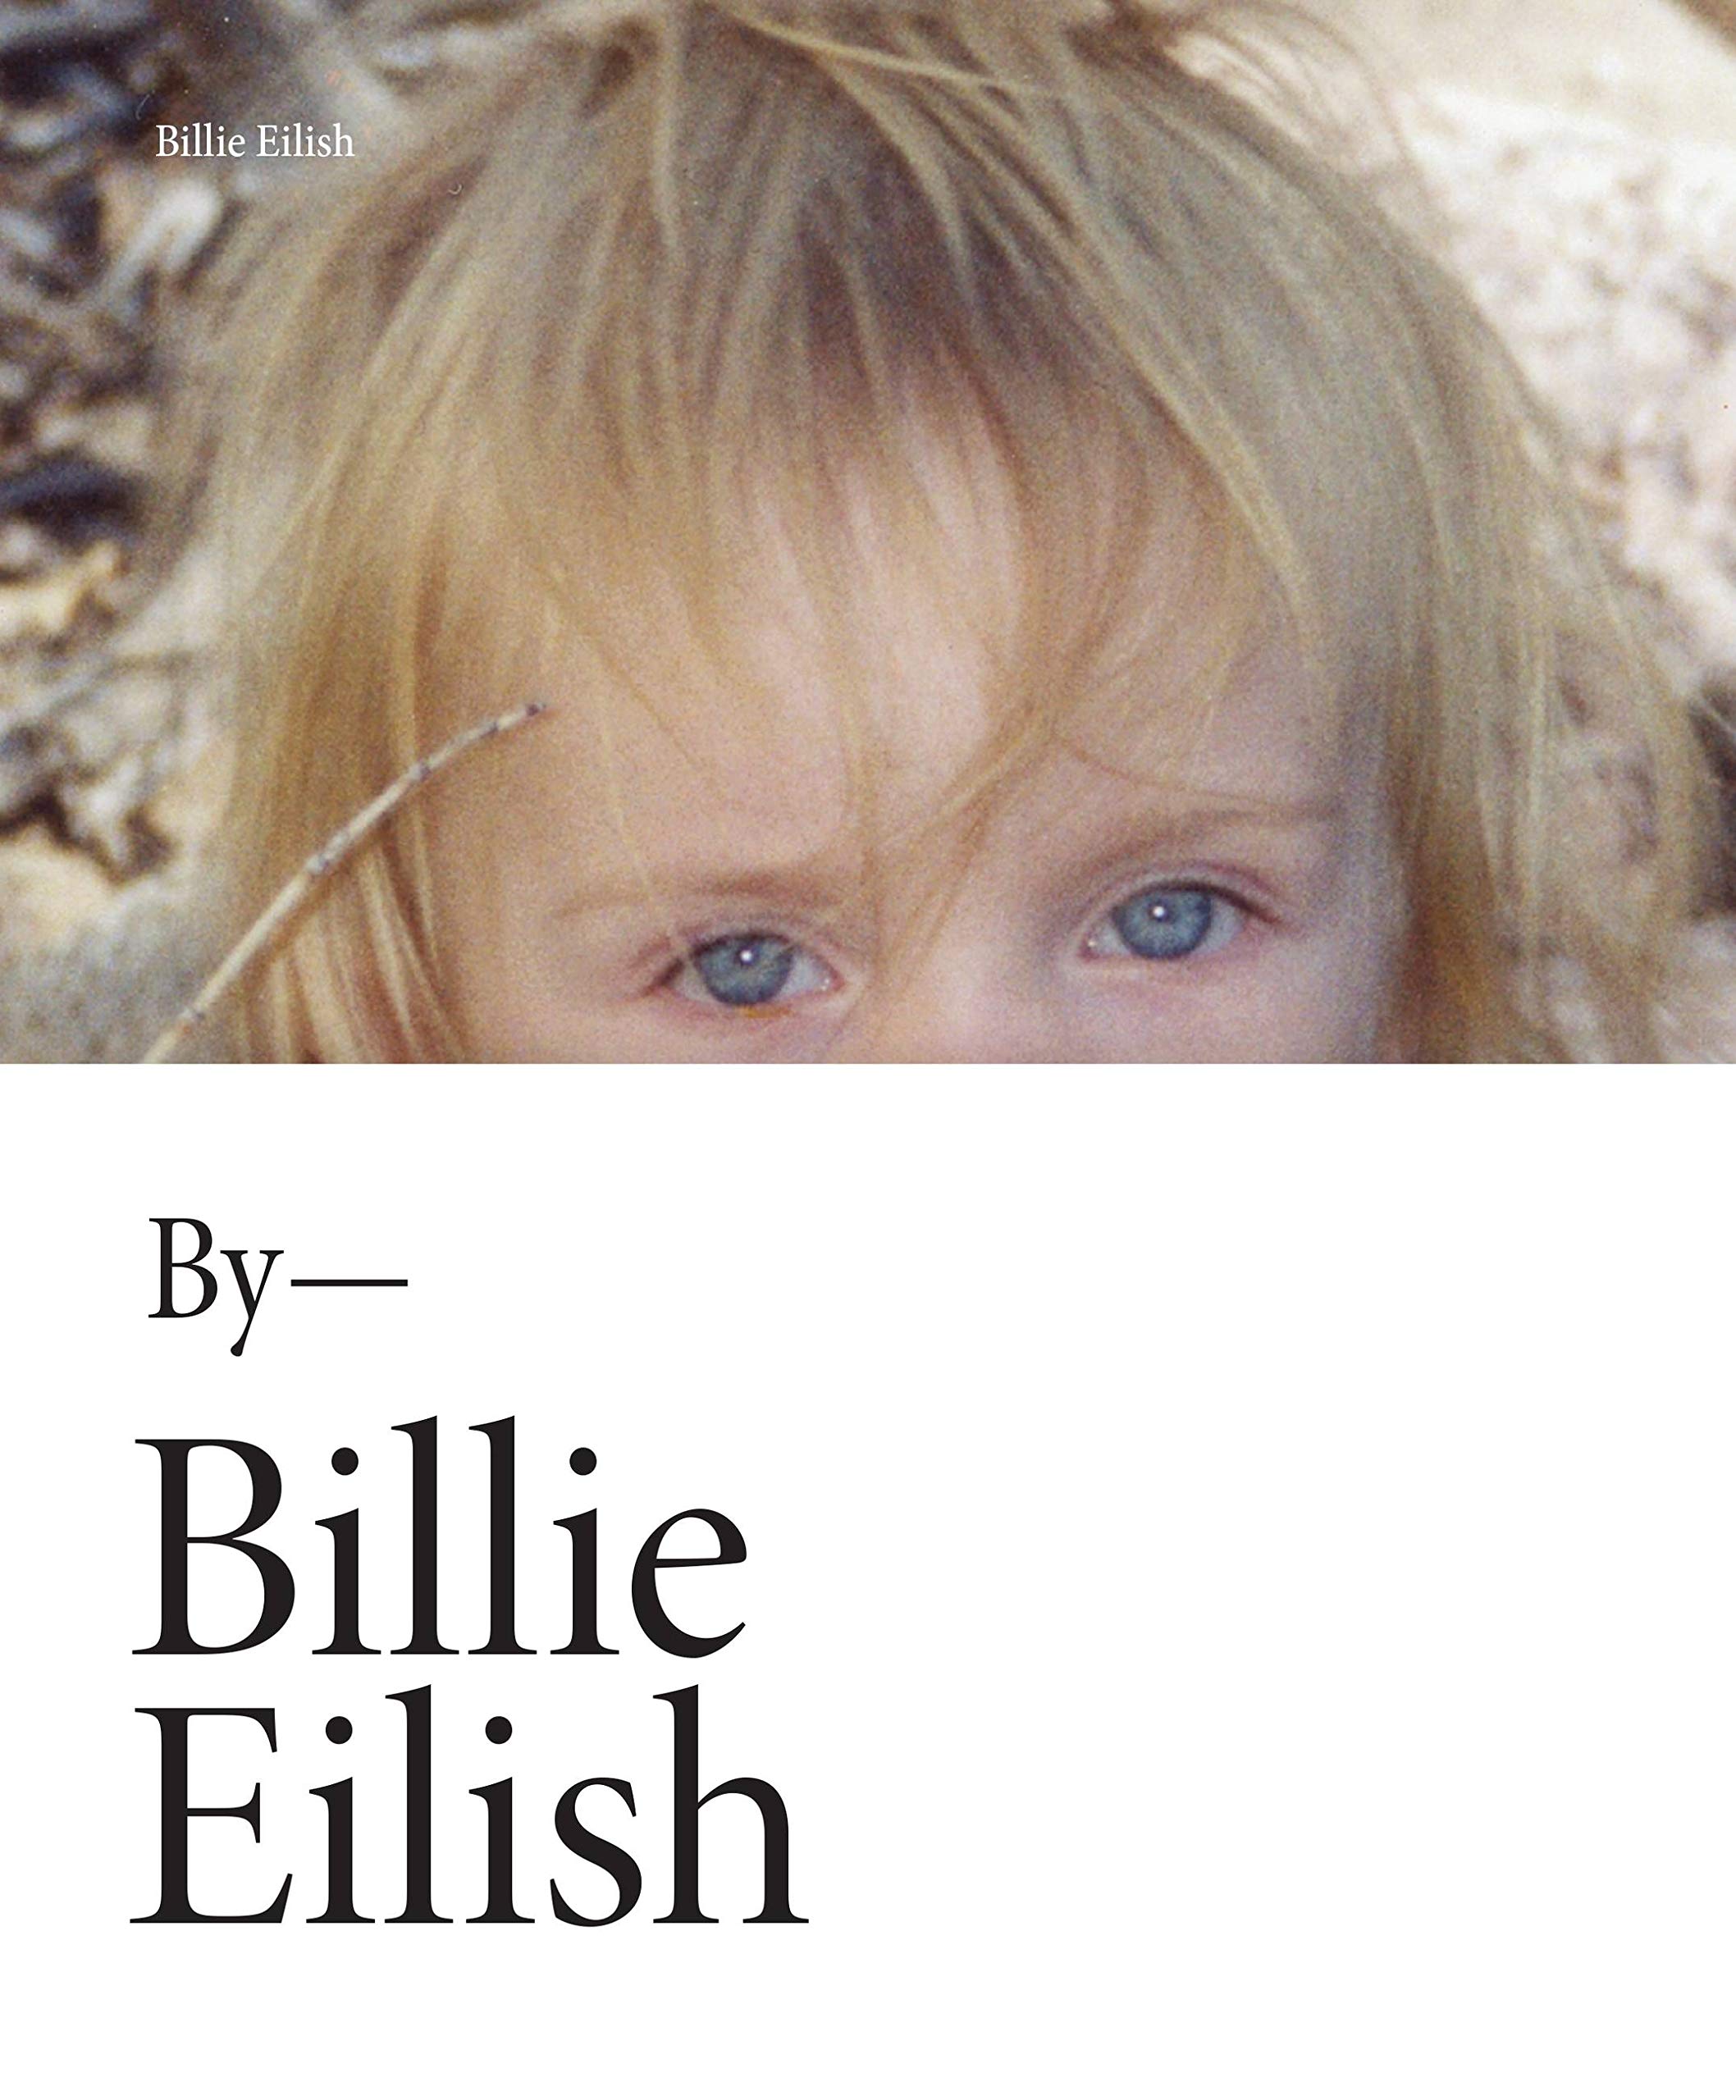 'Billie Eilish' by Billie Eilish